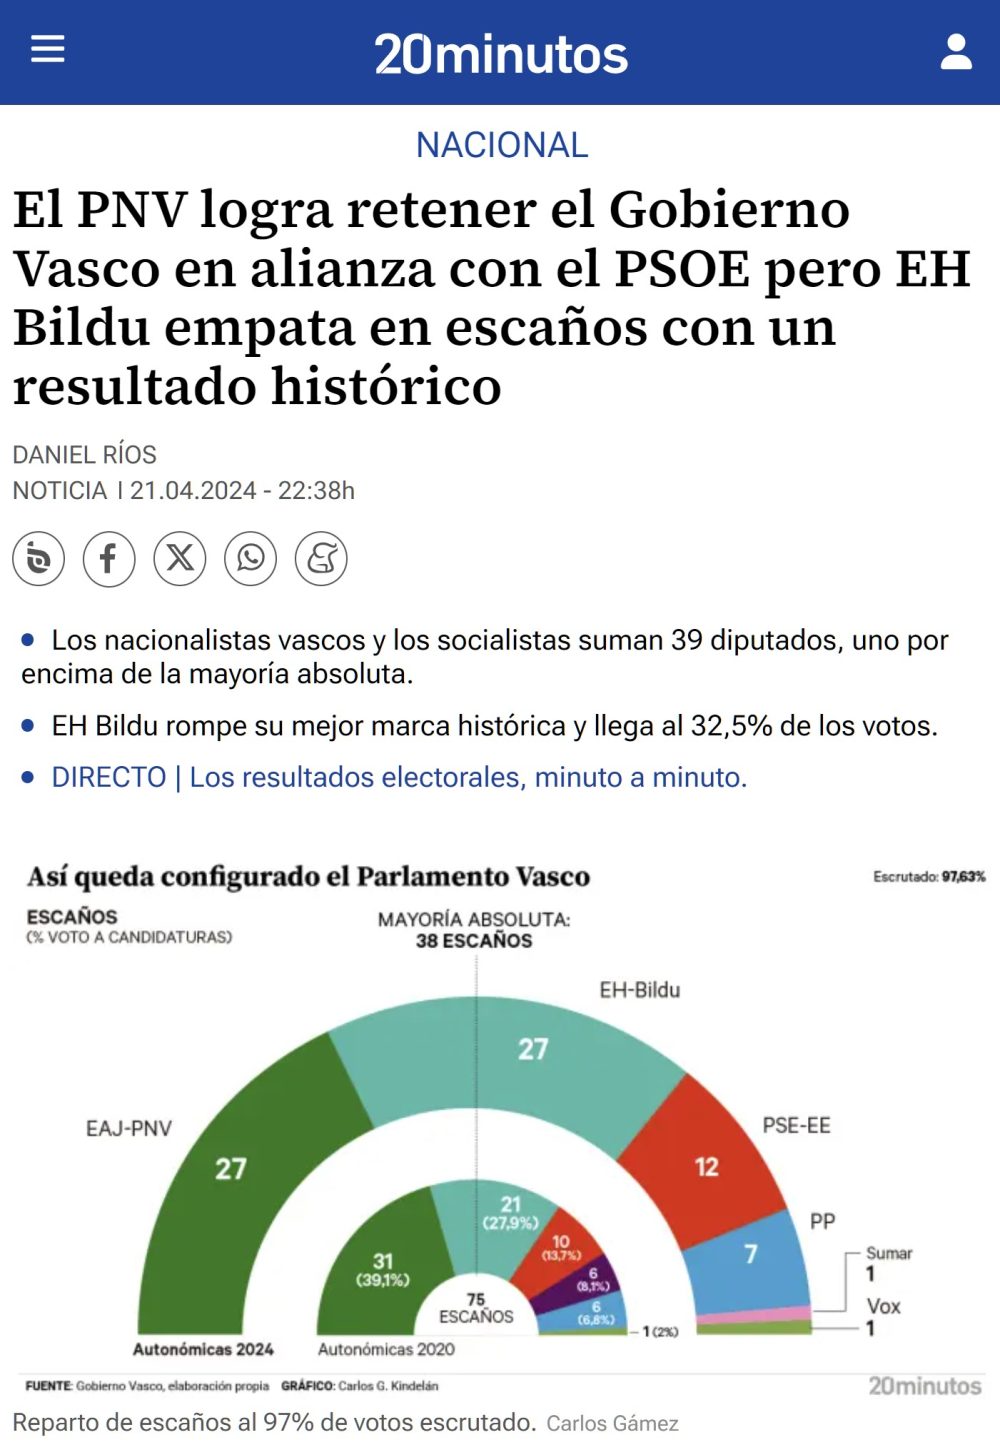 PNV retiene el Gobierno Vasco pero Bildu crece significativamente